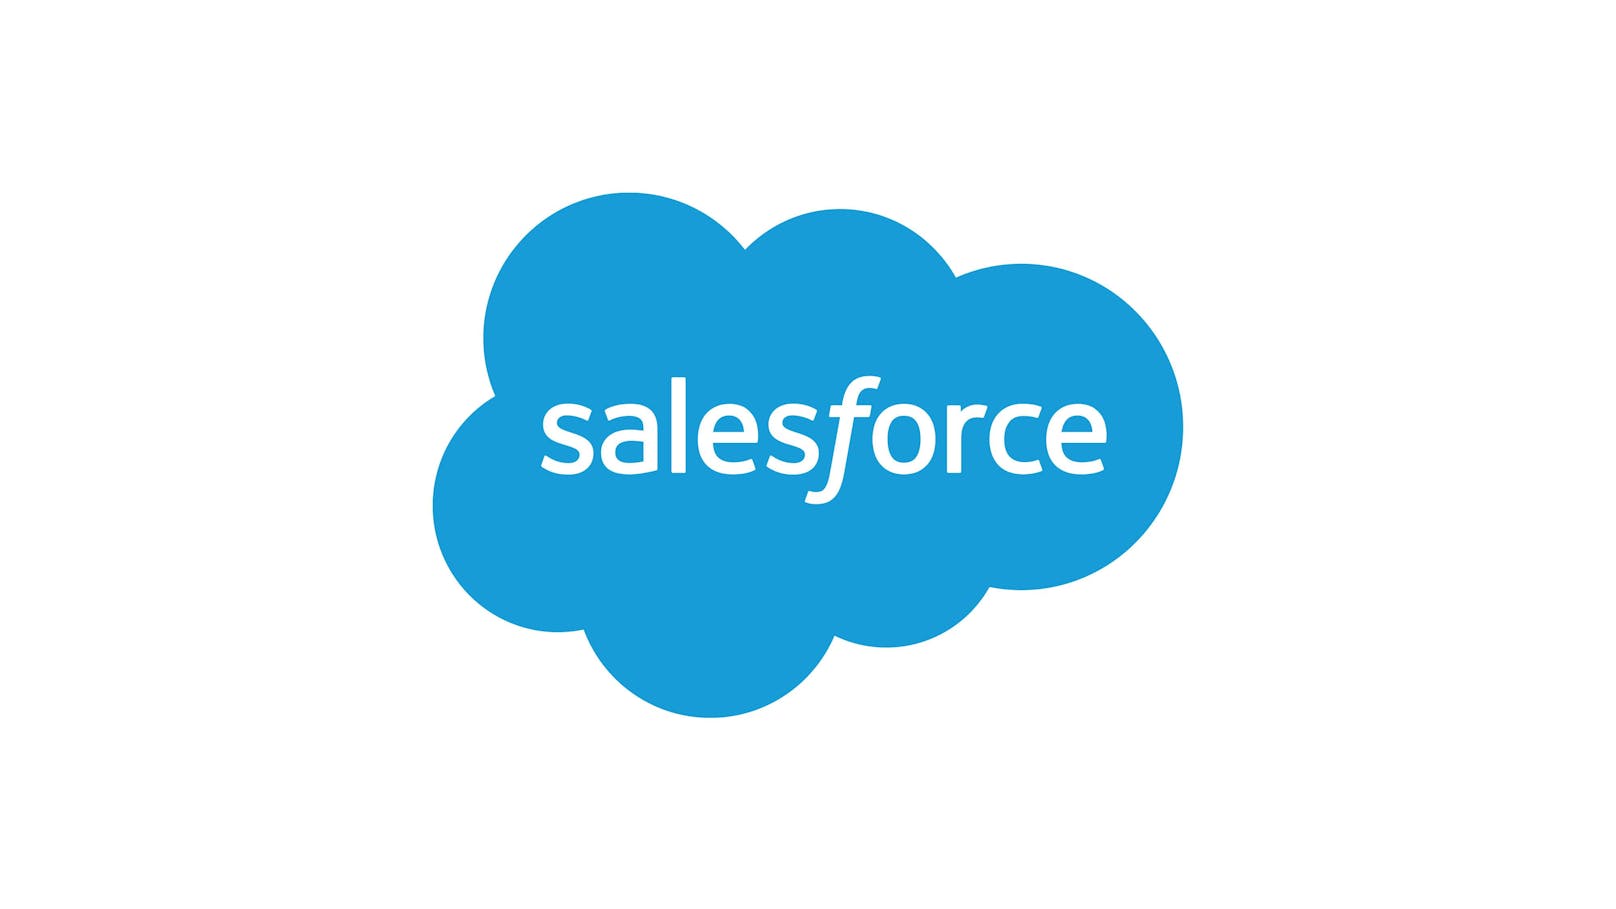 Salesforce Umfrage unter IT-Führungskräften: 85 % erwarten steigende Produktivität ihrer Abteilungen durch KI, ein Hindernis sind nach wie vor Datensilos.